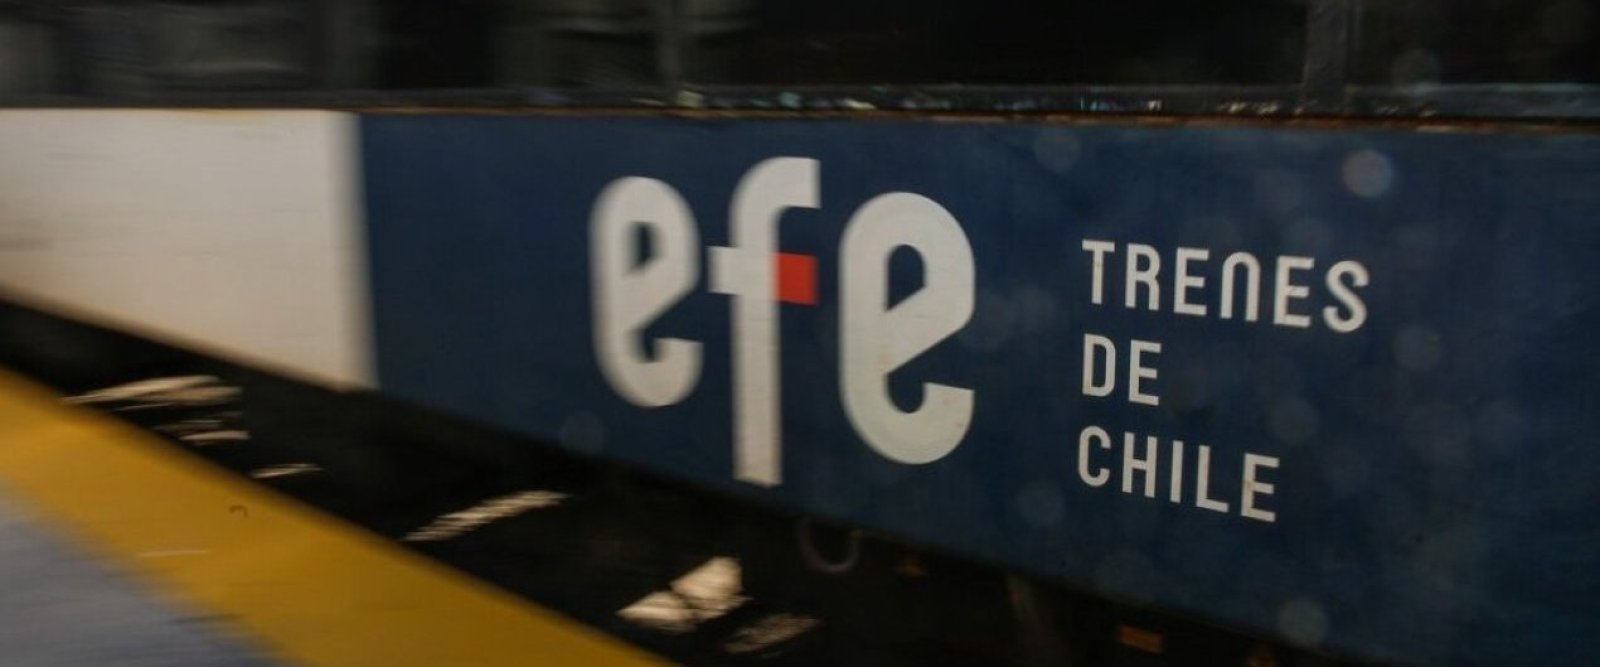 Talca-Constitución: EFE estrenará nuevos trenes provenientes de Brasil